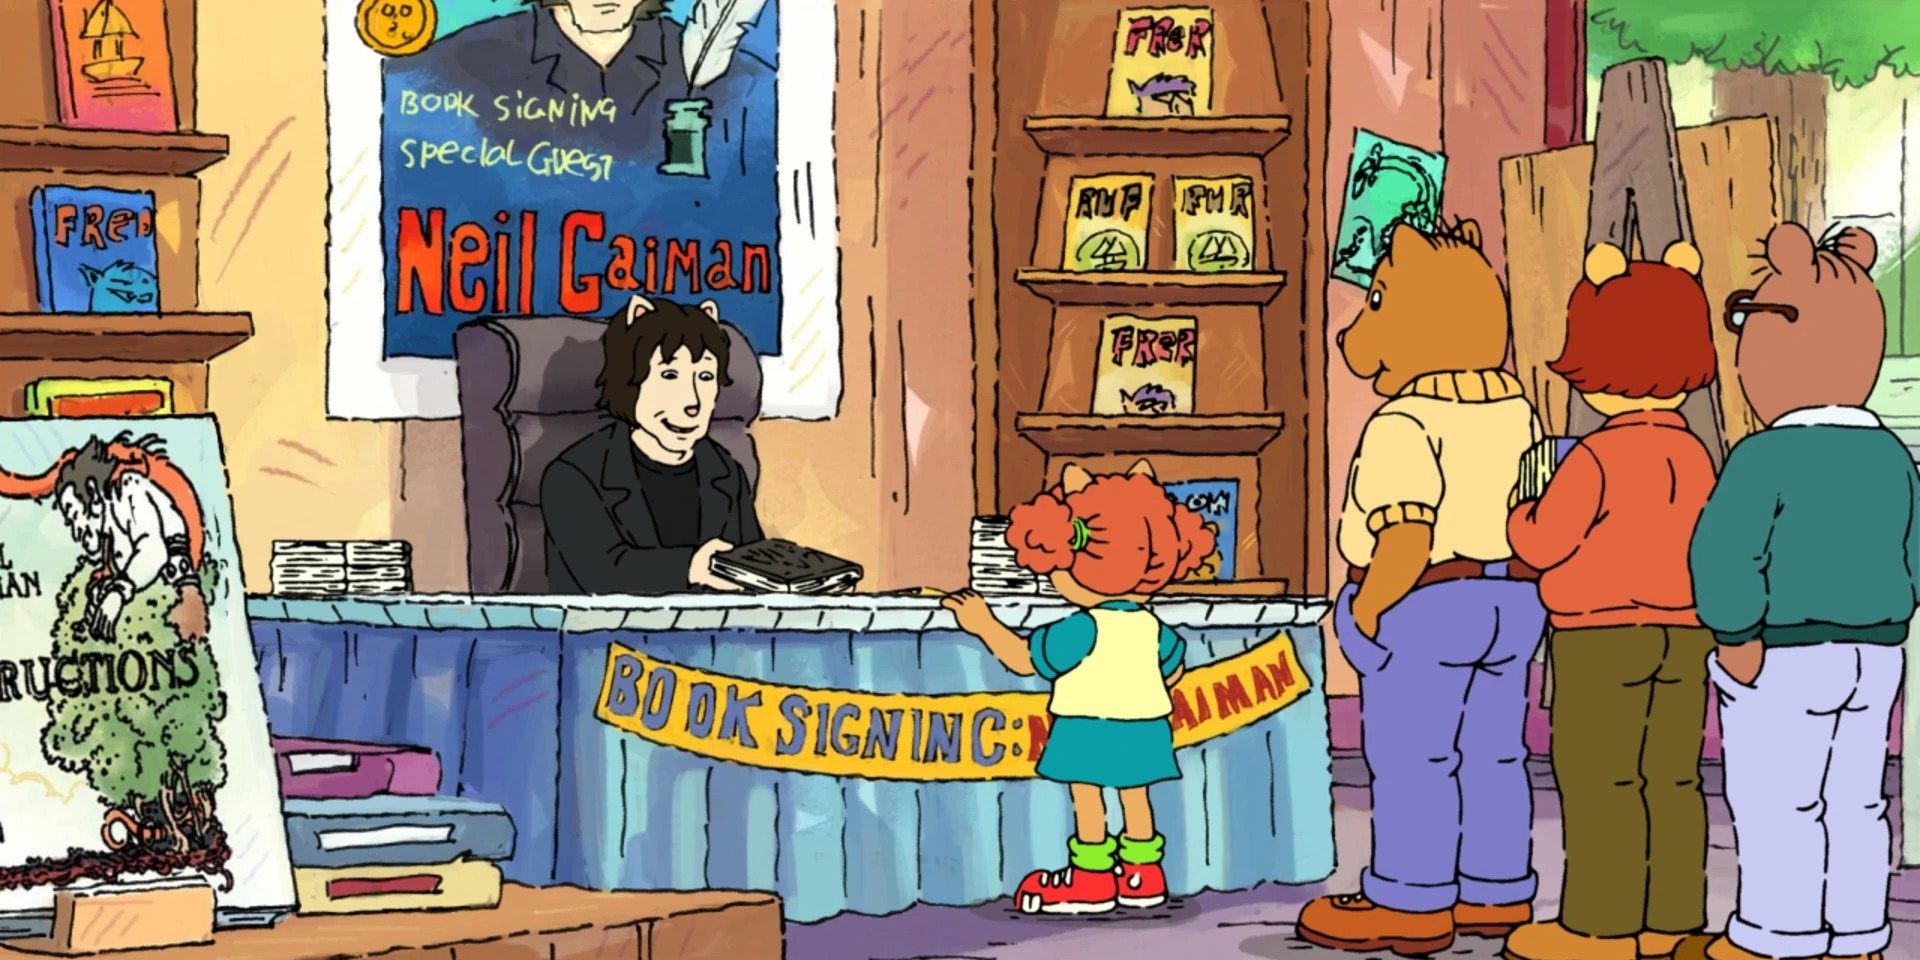 Neil Gaiman on Arthur